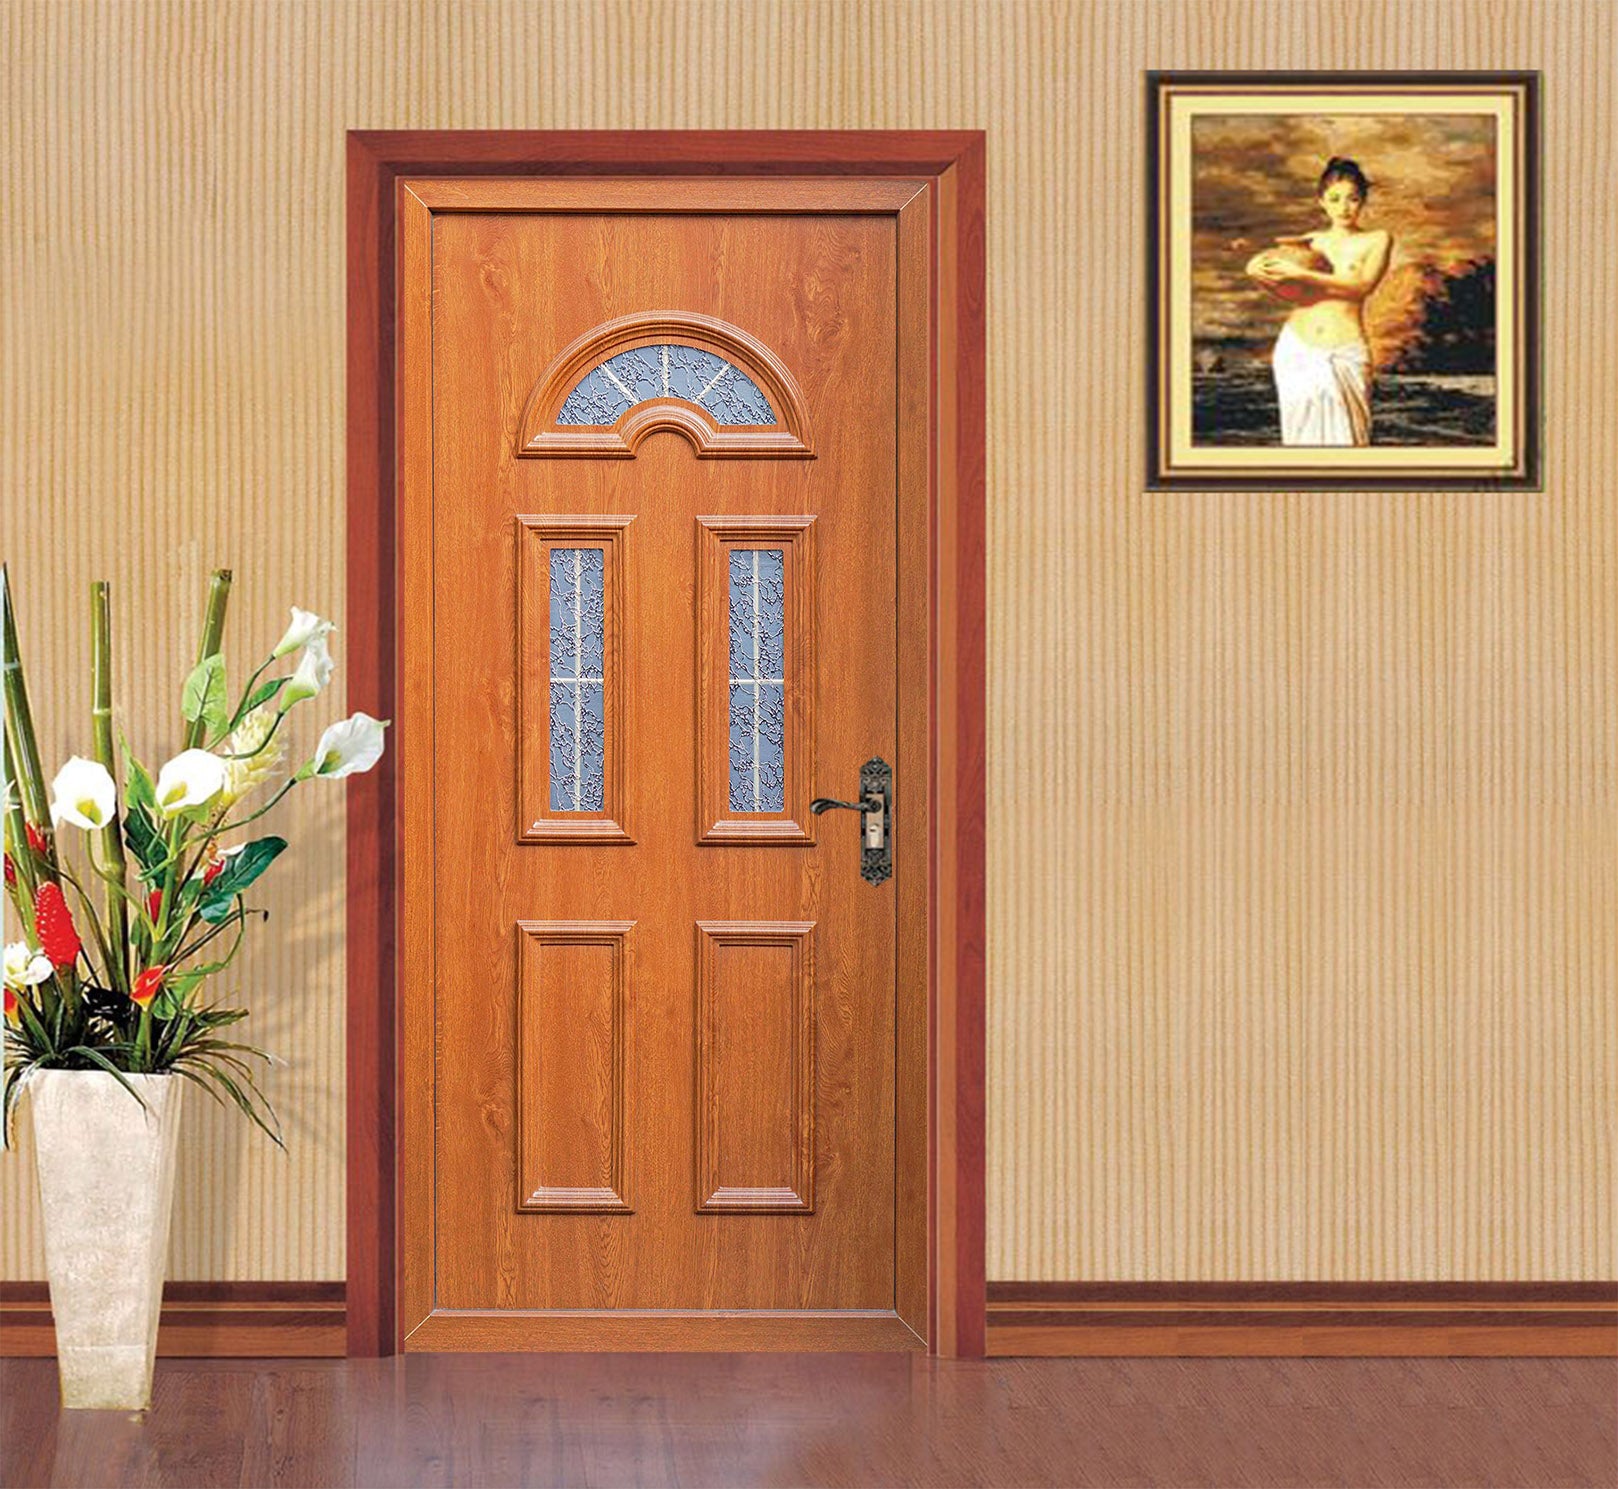 3D Vintage Wooden Door 025 Door Mural